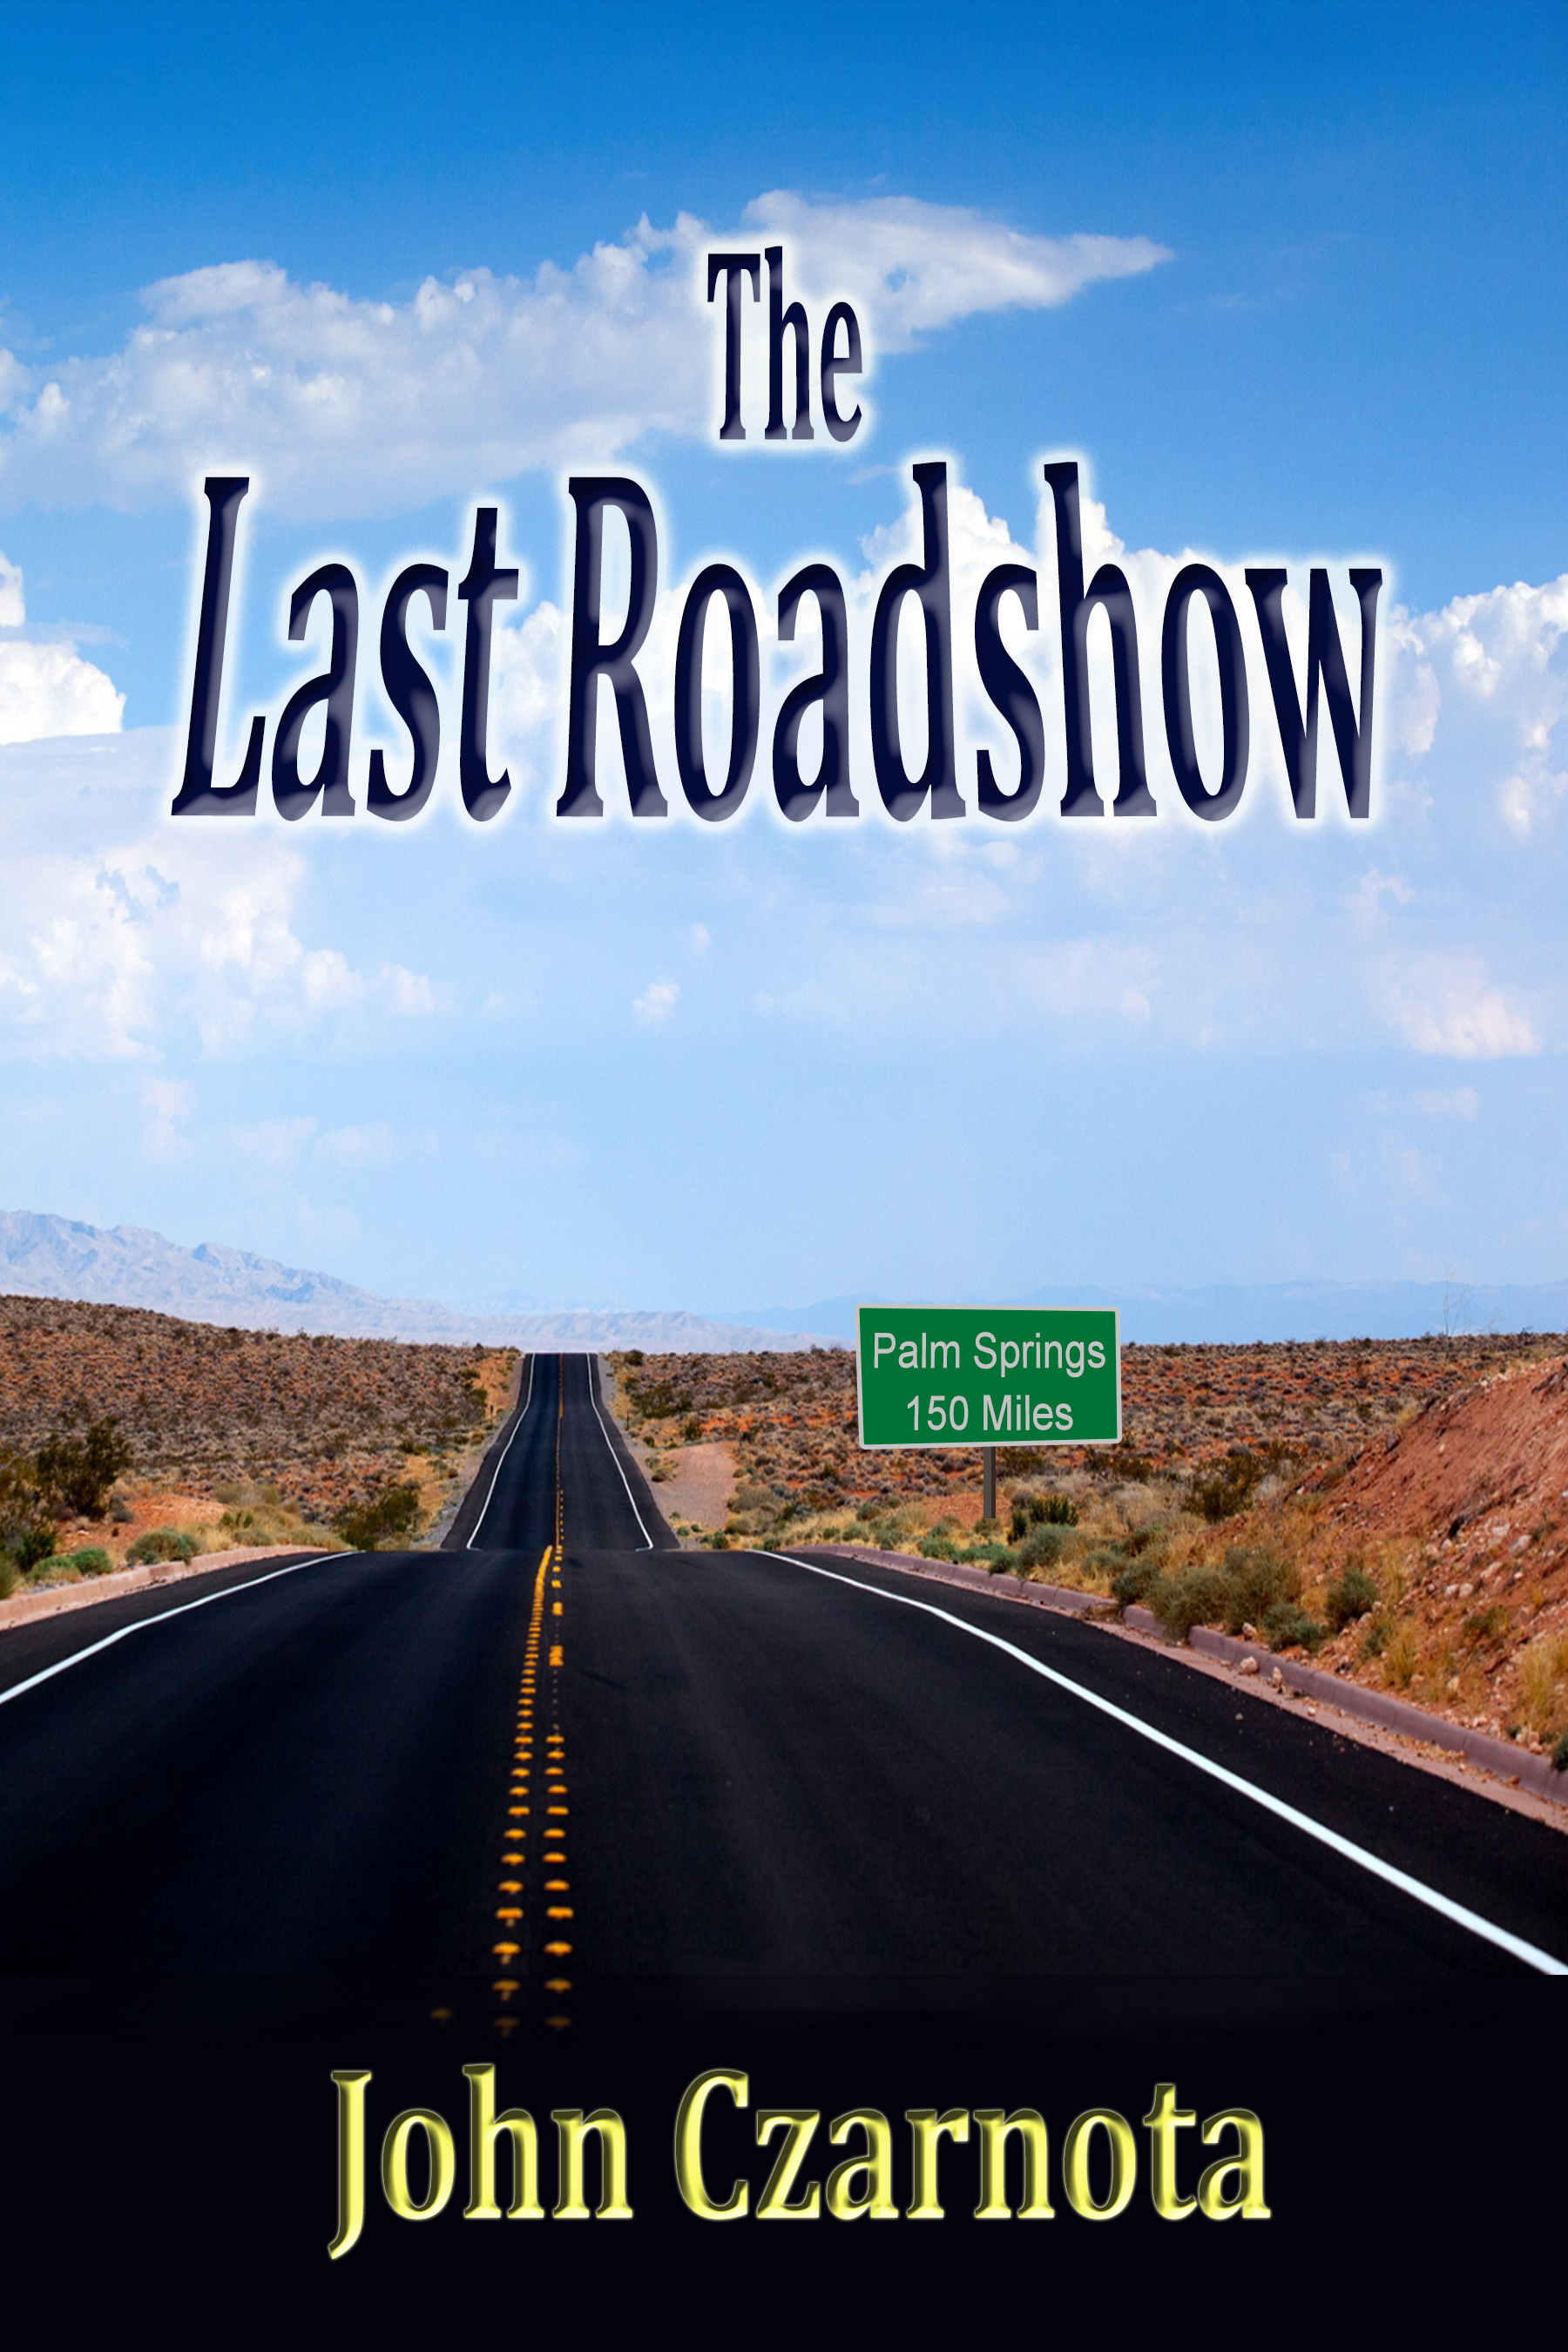 Last Roadshow